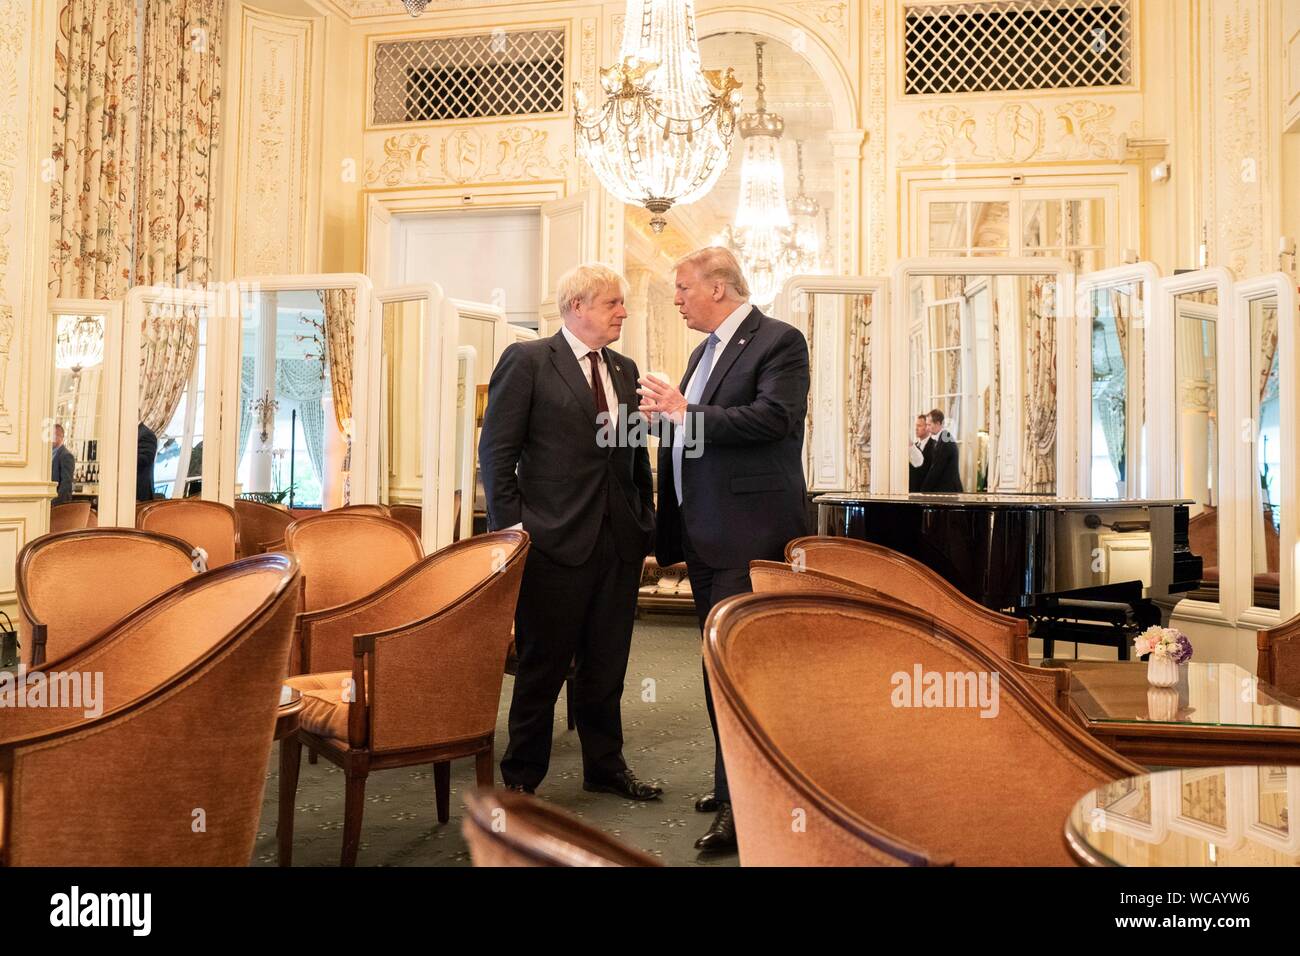 Le Président américain Donald Trump, droite, s'entretient avec le Premier ministre britannique Boris Johnson à l'issue d'une réunion en marge du Sommet du G7 à l'Hôtel du Palais Biarritz 25 août 2019 à Biarritz, France. Banque D'Images